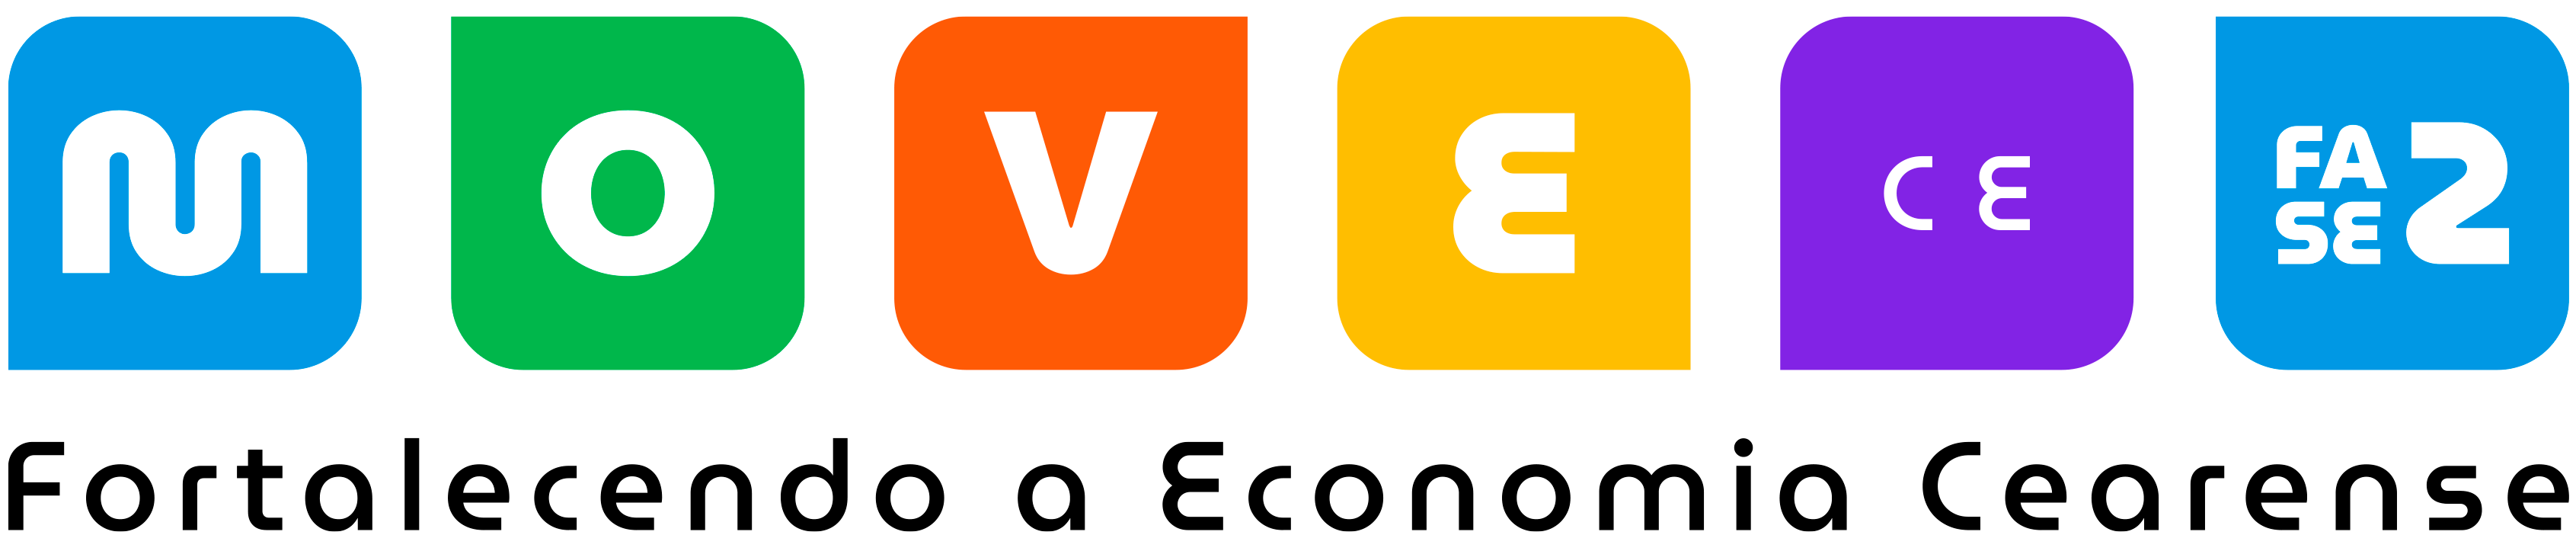 Logotipo MoveCE - Fase 2